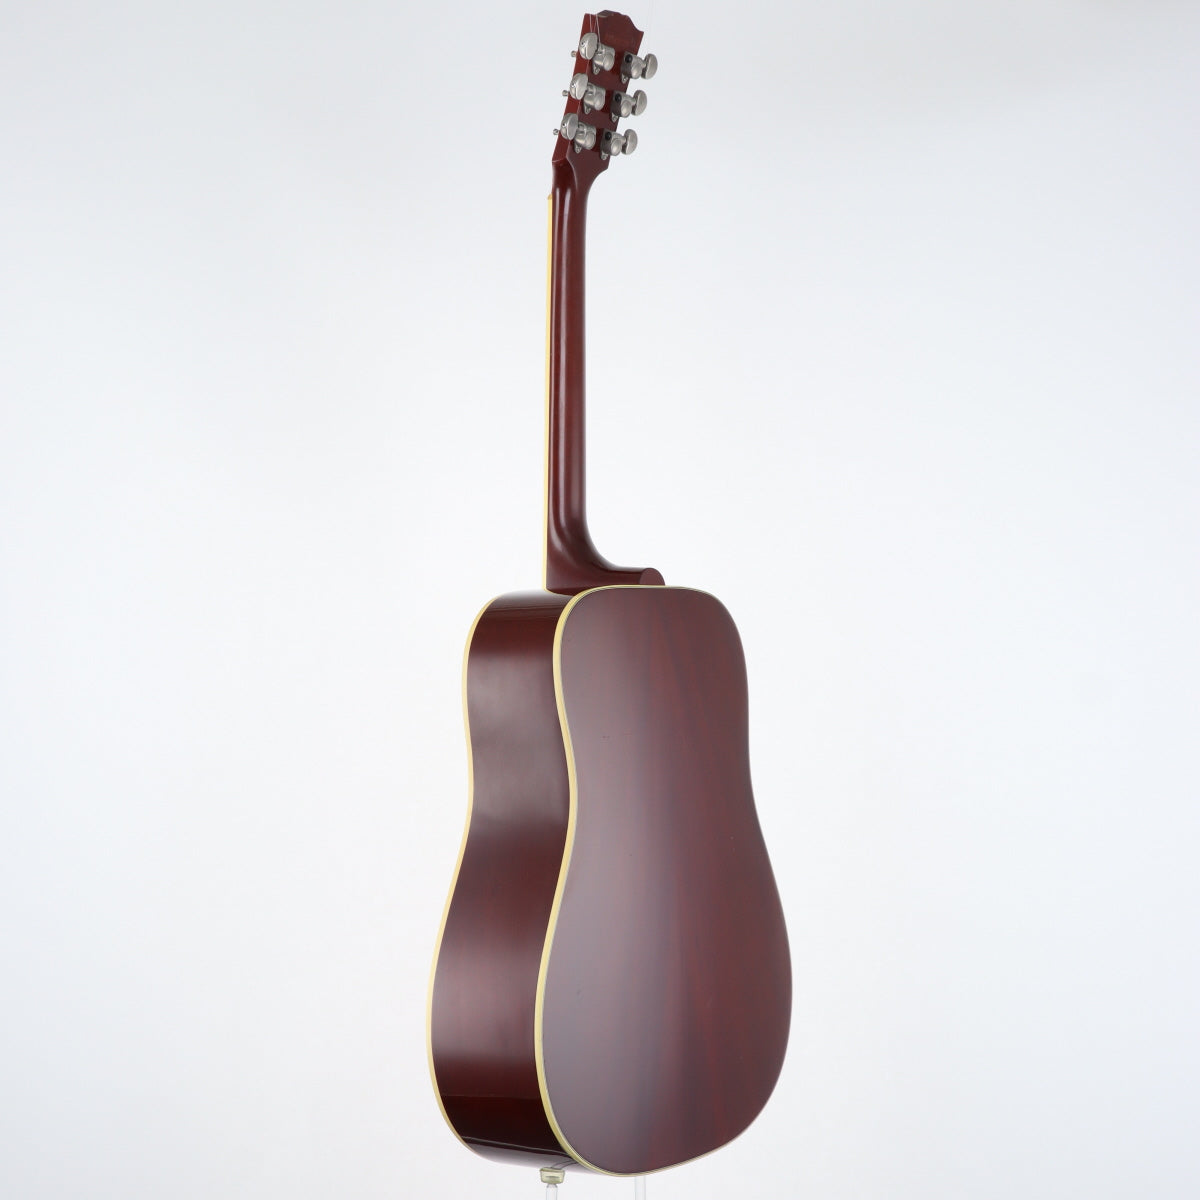 [SN 92589029] USED Gibson / Early 60s Hummingbird 1999 [12]